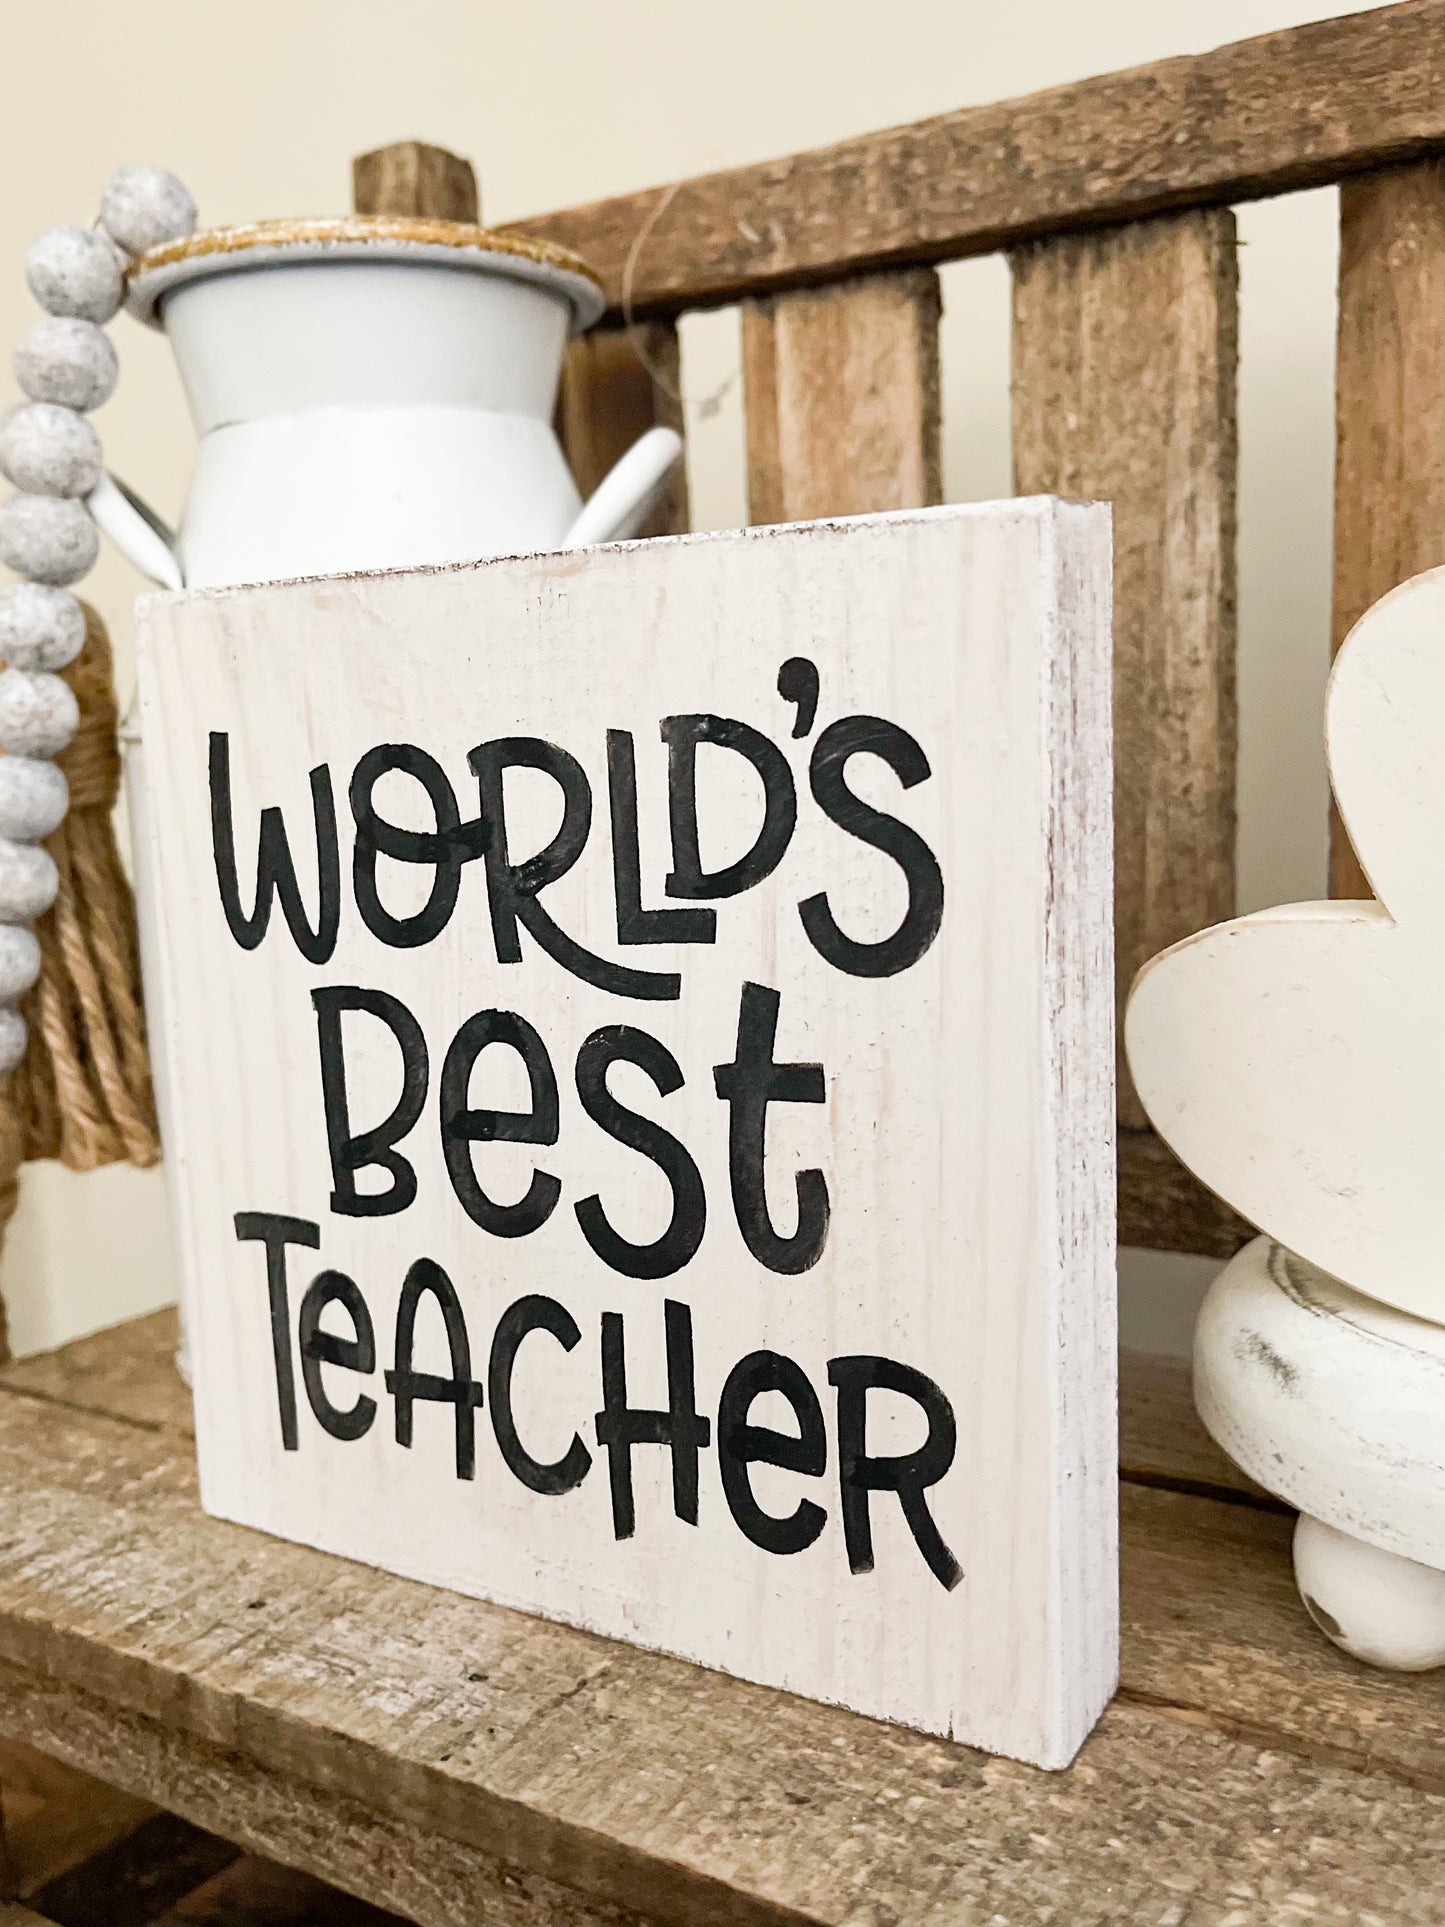 World's best teacher sign